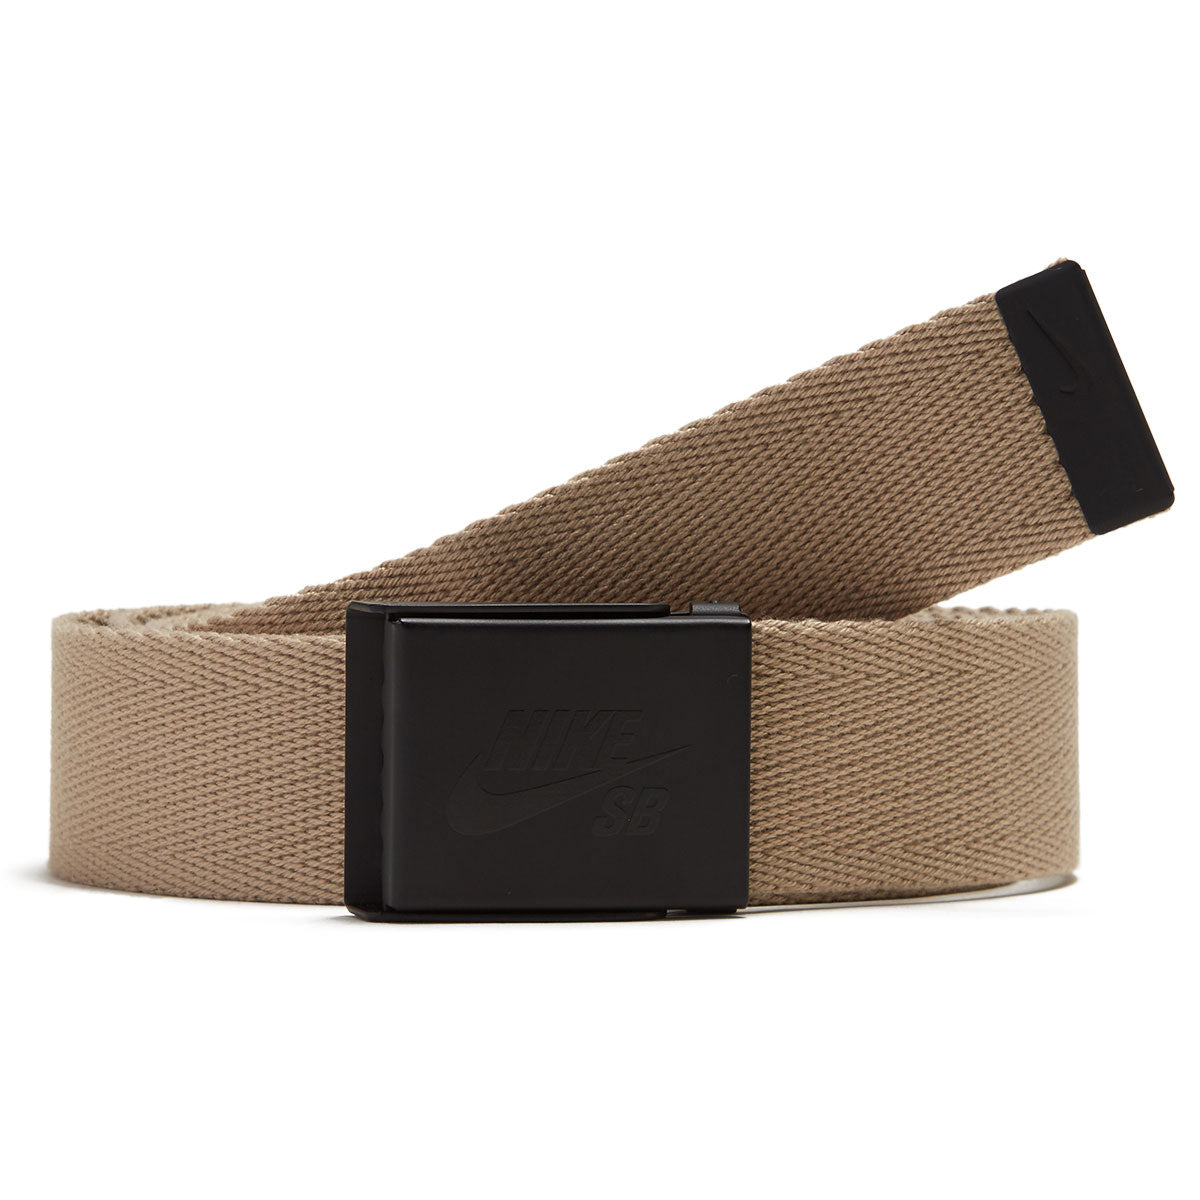 Nike SB Solid Web Belt - Khaki image 1